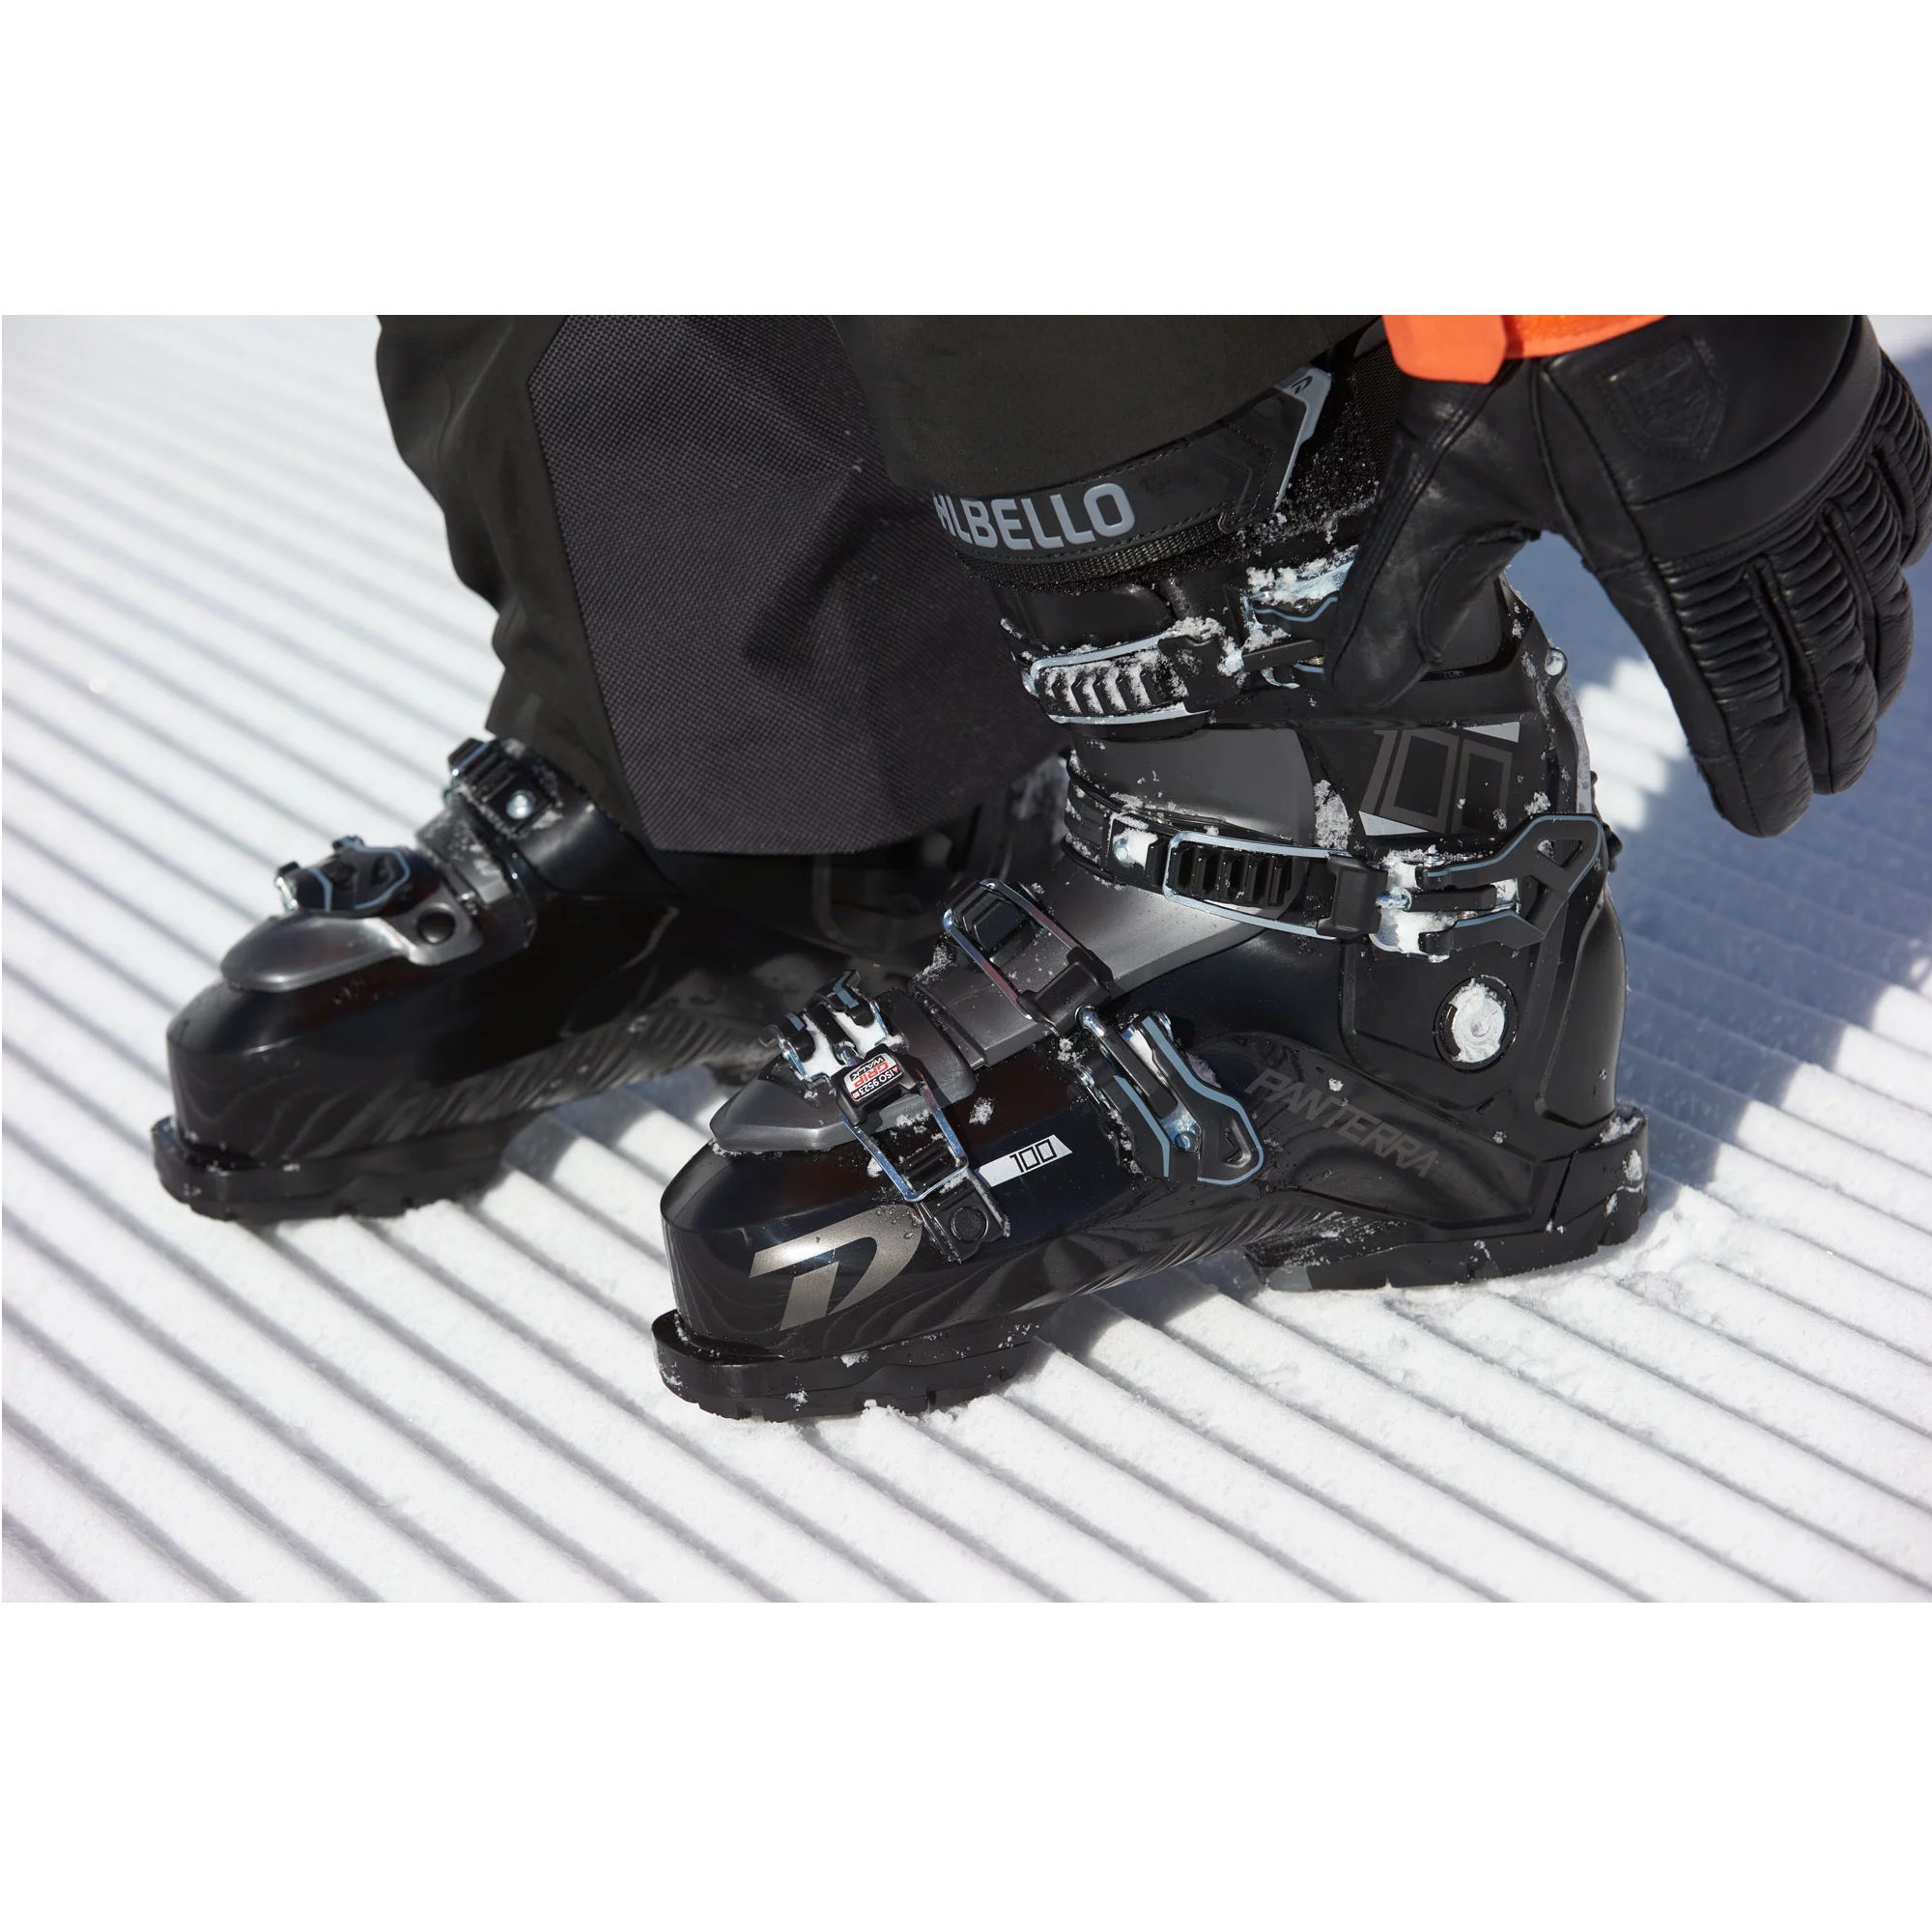 Ski Boots -  dalbello PANTERRA 100 GW